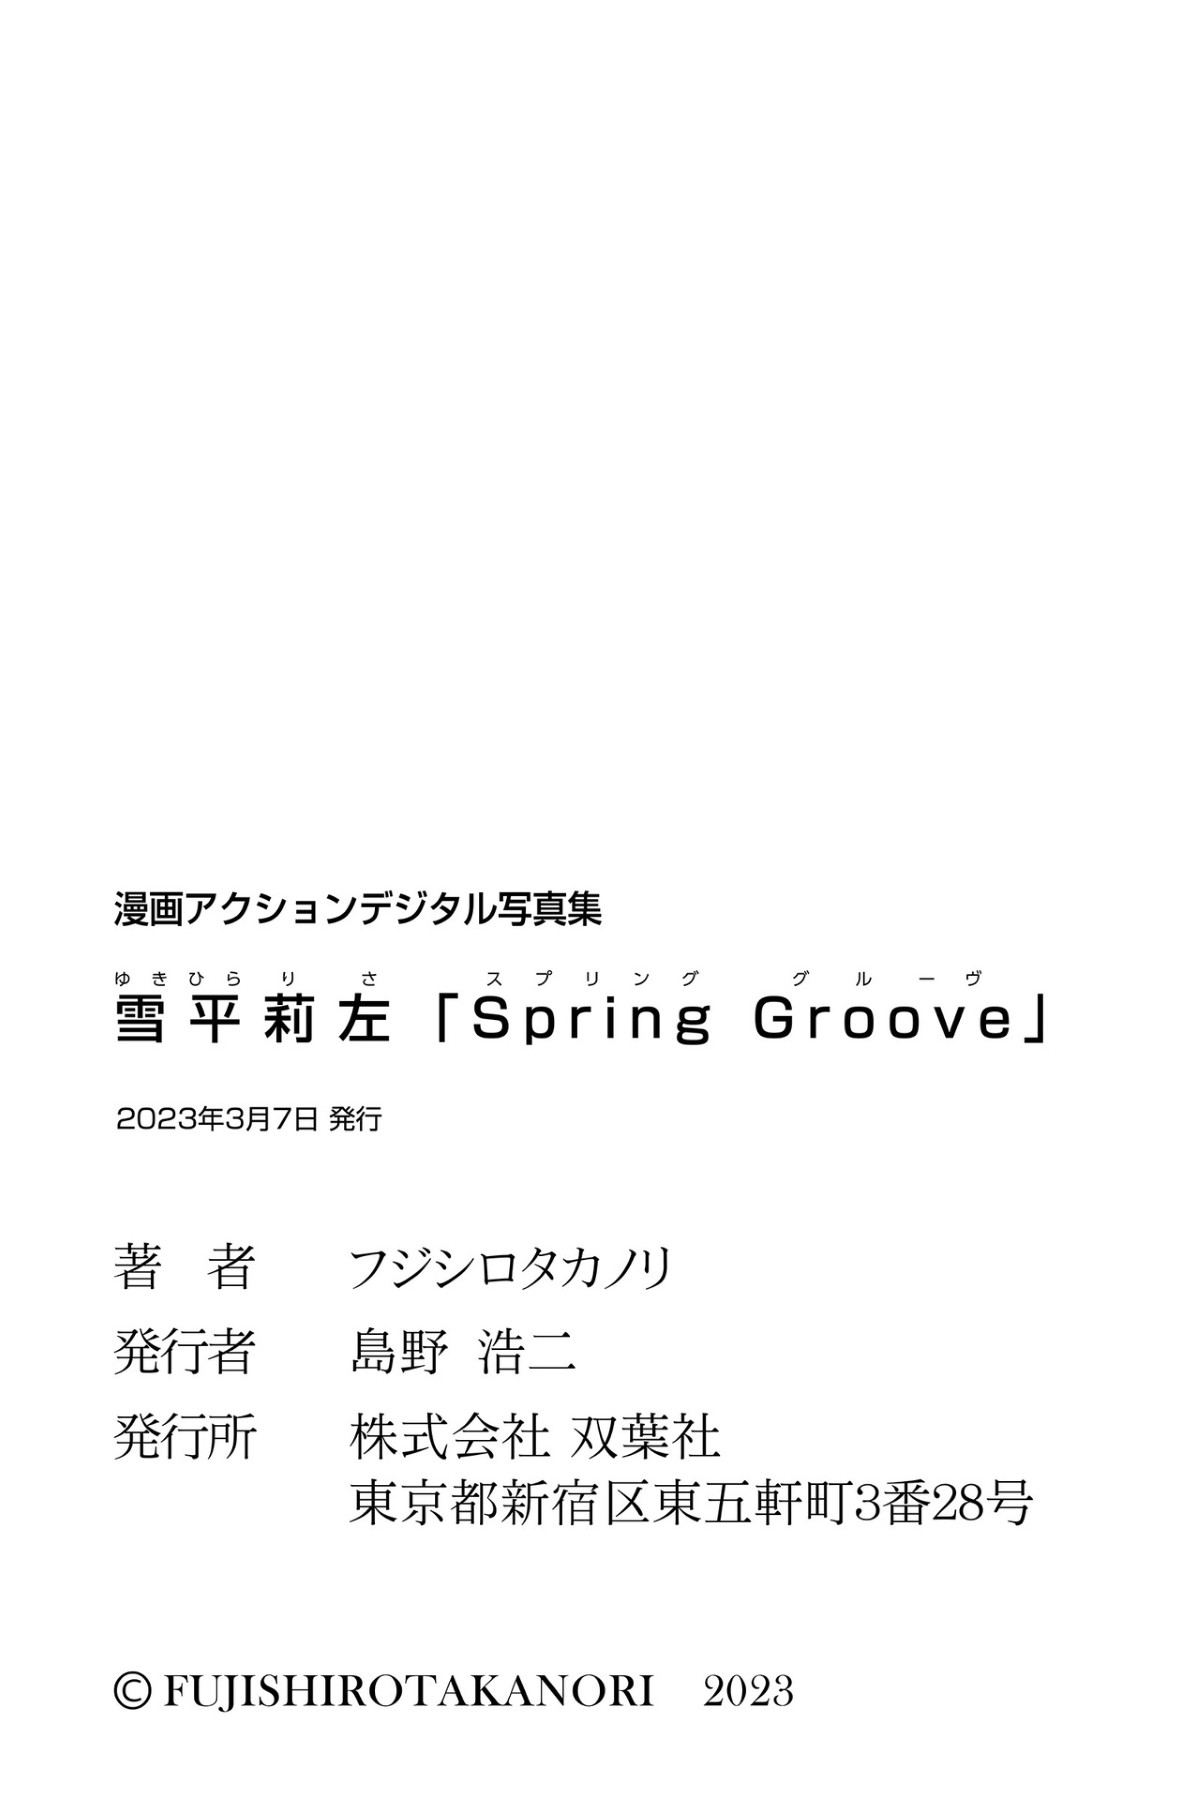 Manga Action Photobook 2023 03 07 Risa Yukihira 雪平莉左 Spring Groove 0048 1946983867.jpg